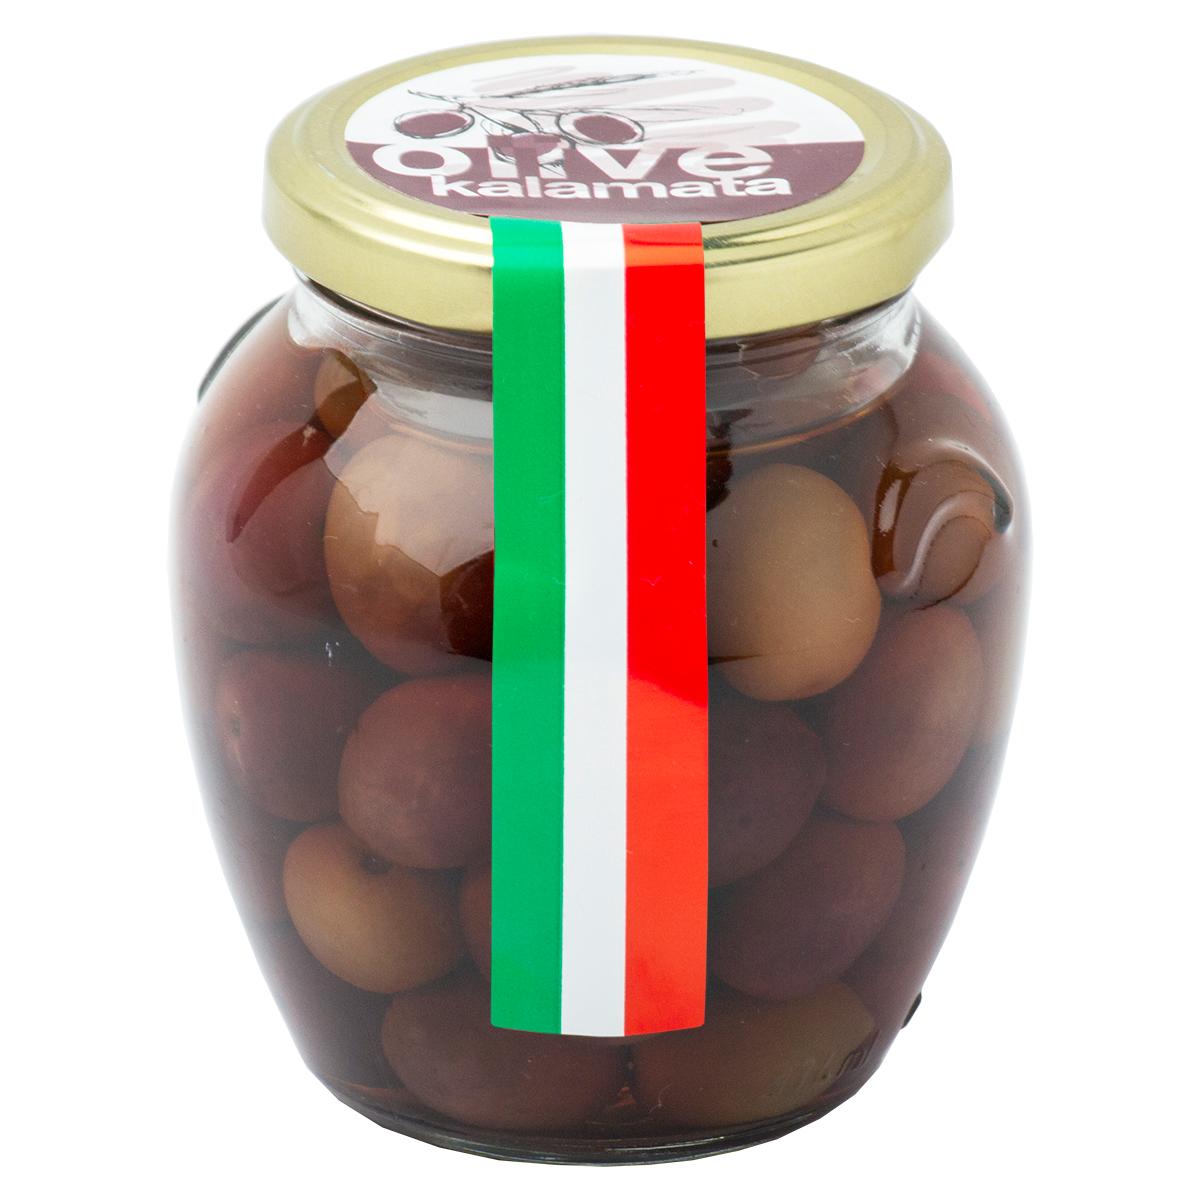 Оливки Cezoni kalamata консервированные с косточкой, 290 гр., стекло